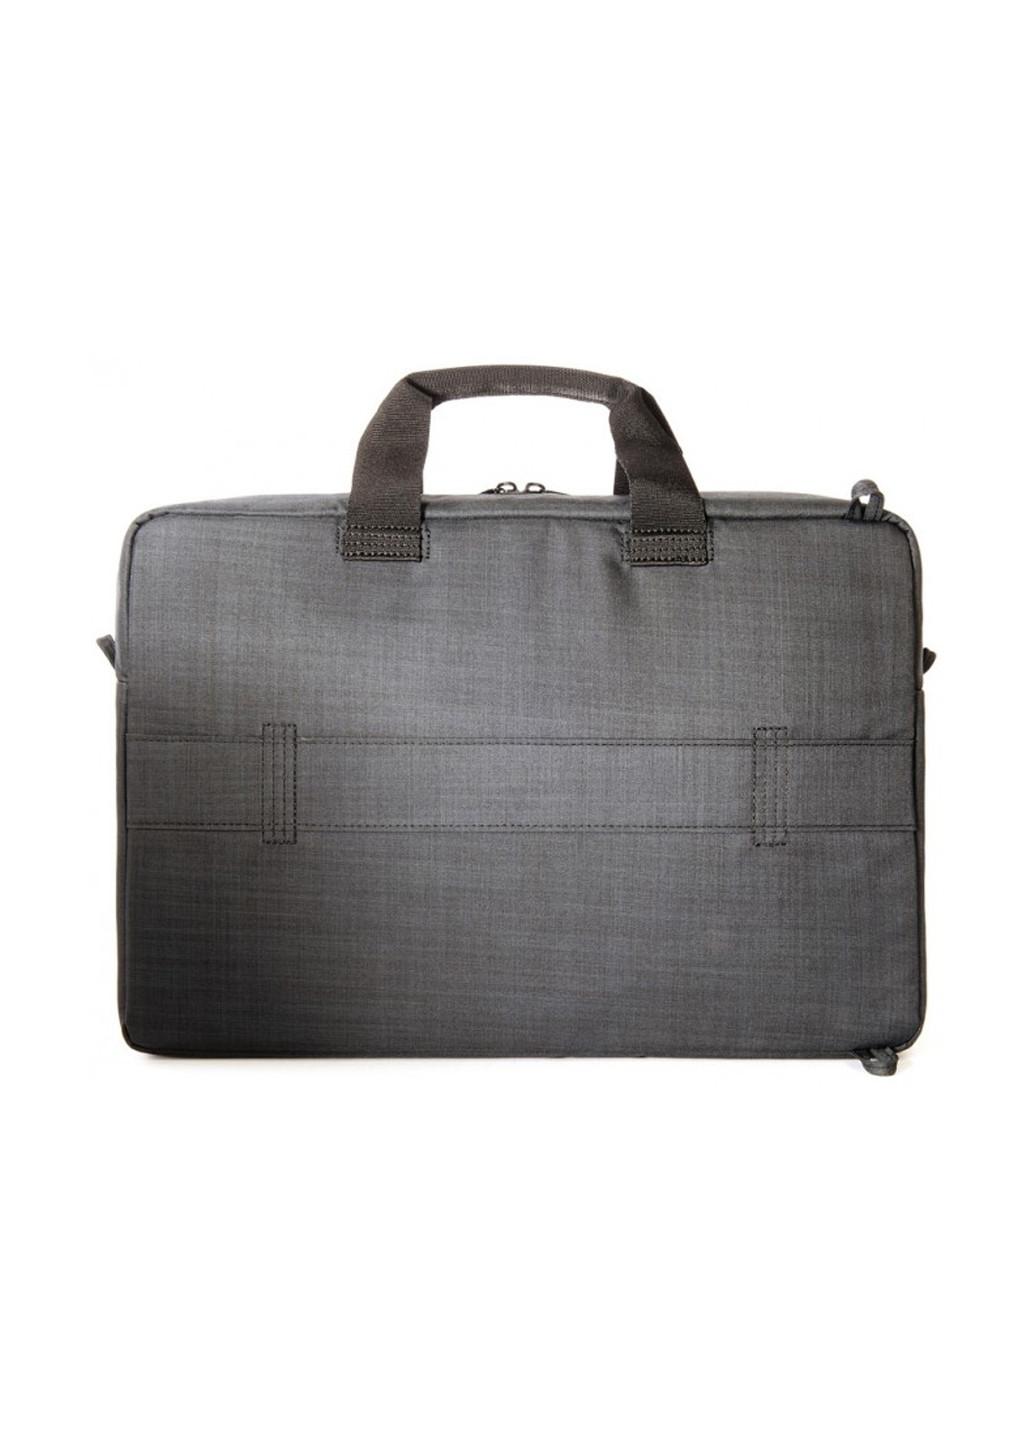 Рюкзак для ноутбука Svolta Convertible Bag 15.6 (чорна) Tucano BSVO15DZ чорний